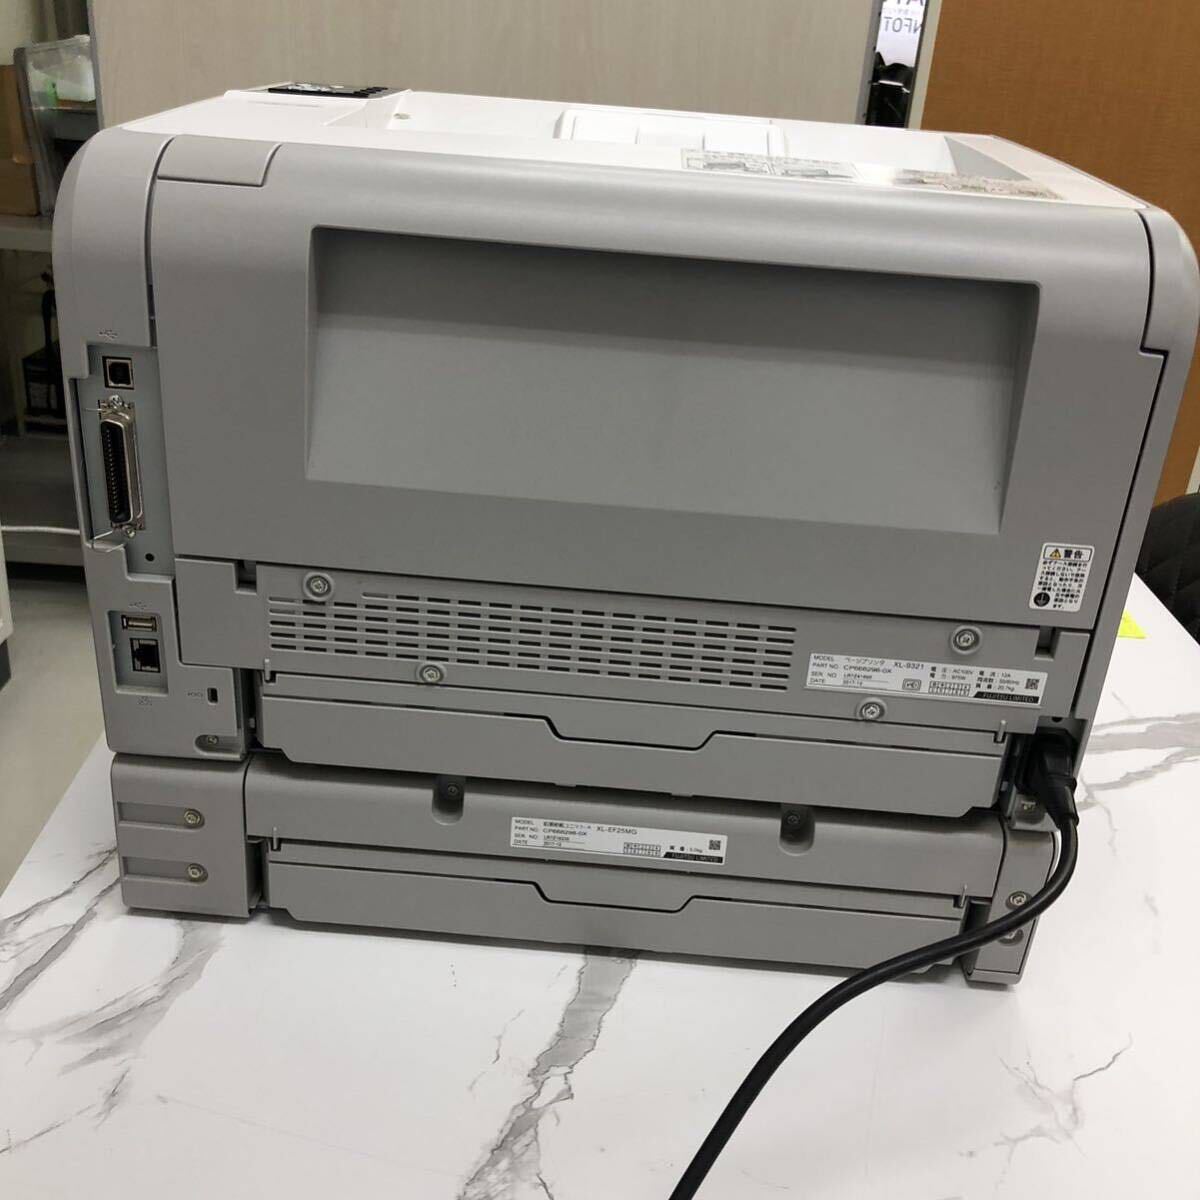  Fujitsu лазерный принтер - для бизнеса FUJITSU Printer XL-9321